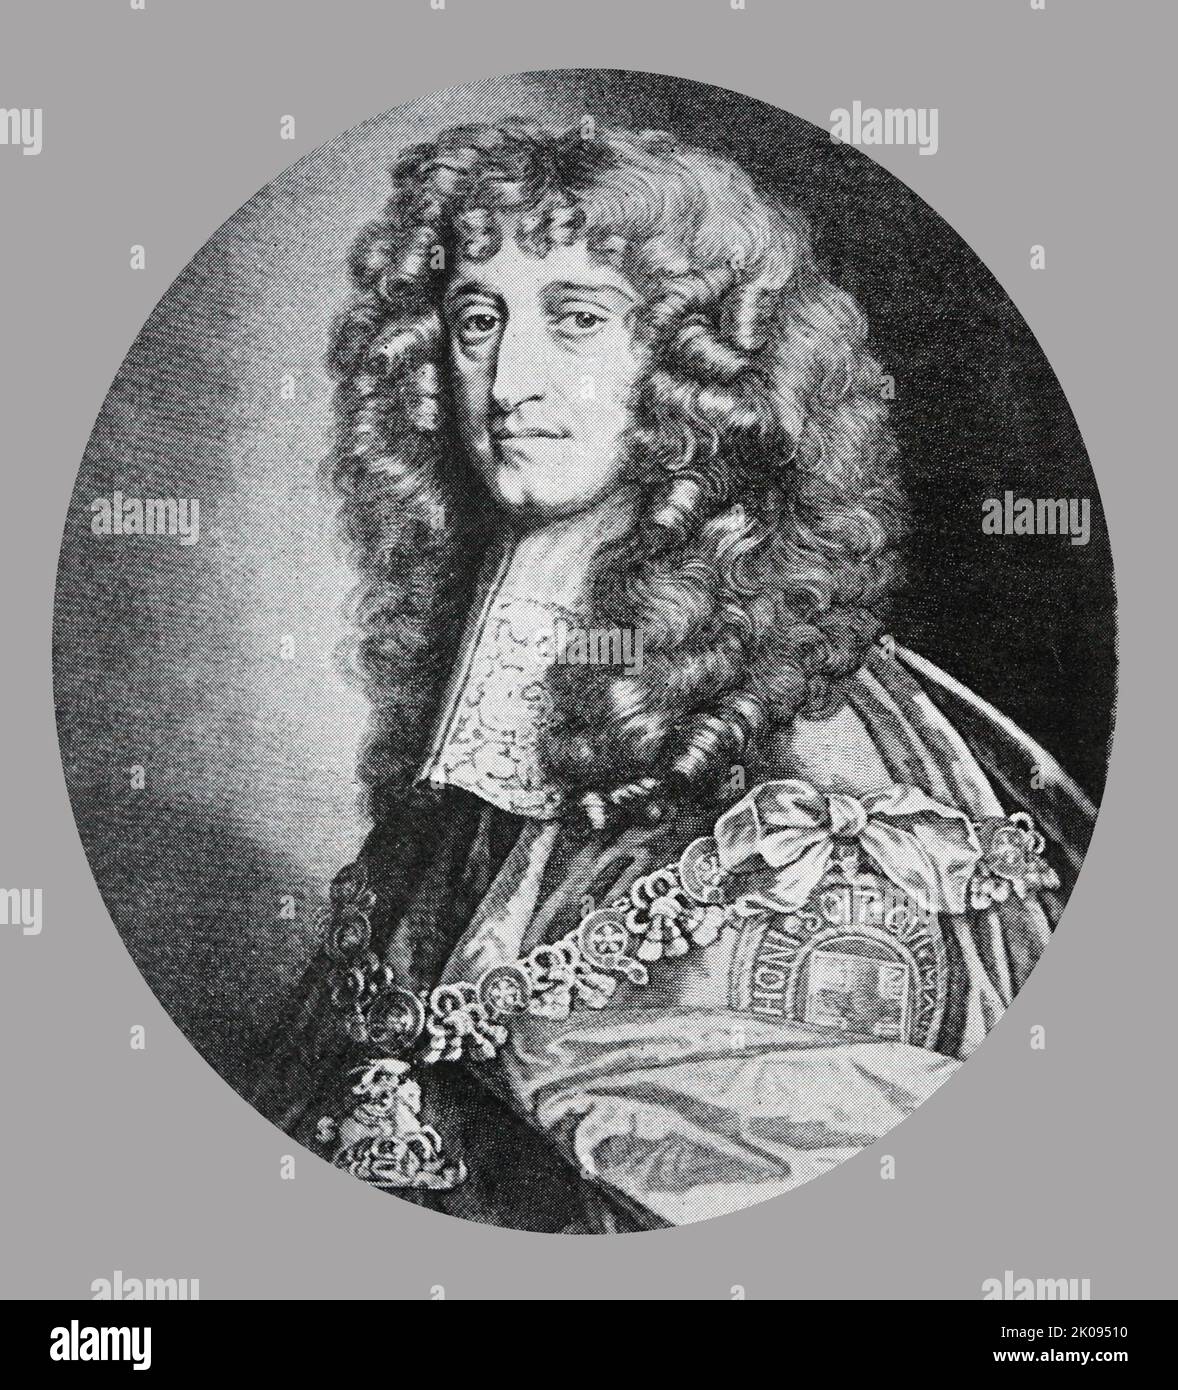 Principe Rupert, da un dipinto di Lely. Rupert, duca di Cumberland, KG, PC, FRS (17 dicembre 1619 – 29 novembre 1682) è stato un . Per la prima volta è venuto alla ribalta come comandante di cavalleria Royalist durante la guerra civile inglese. Foto Stock